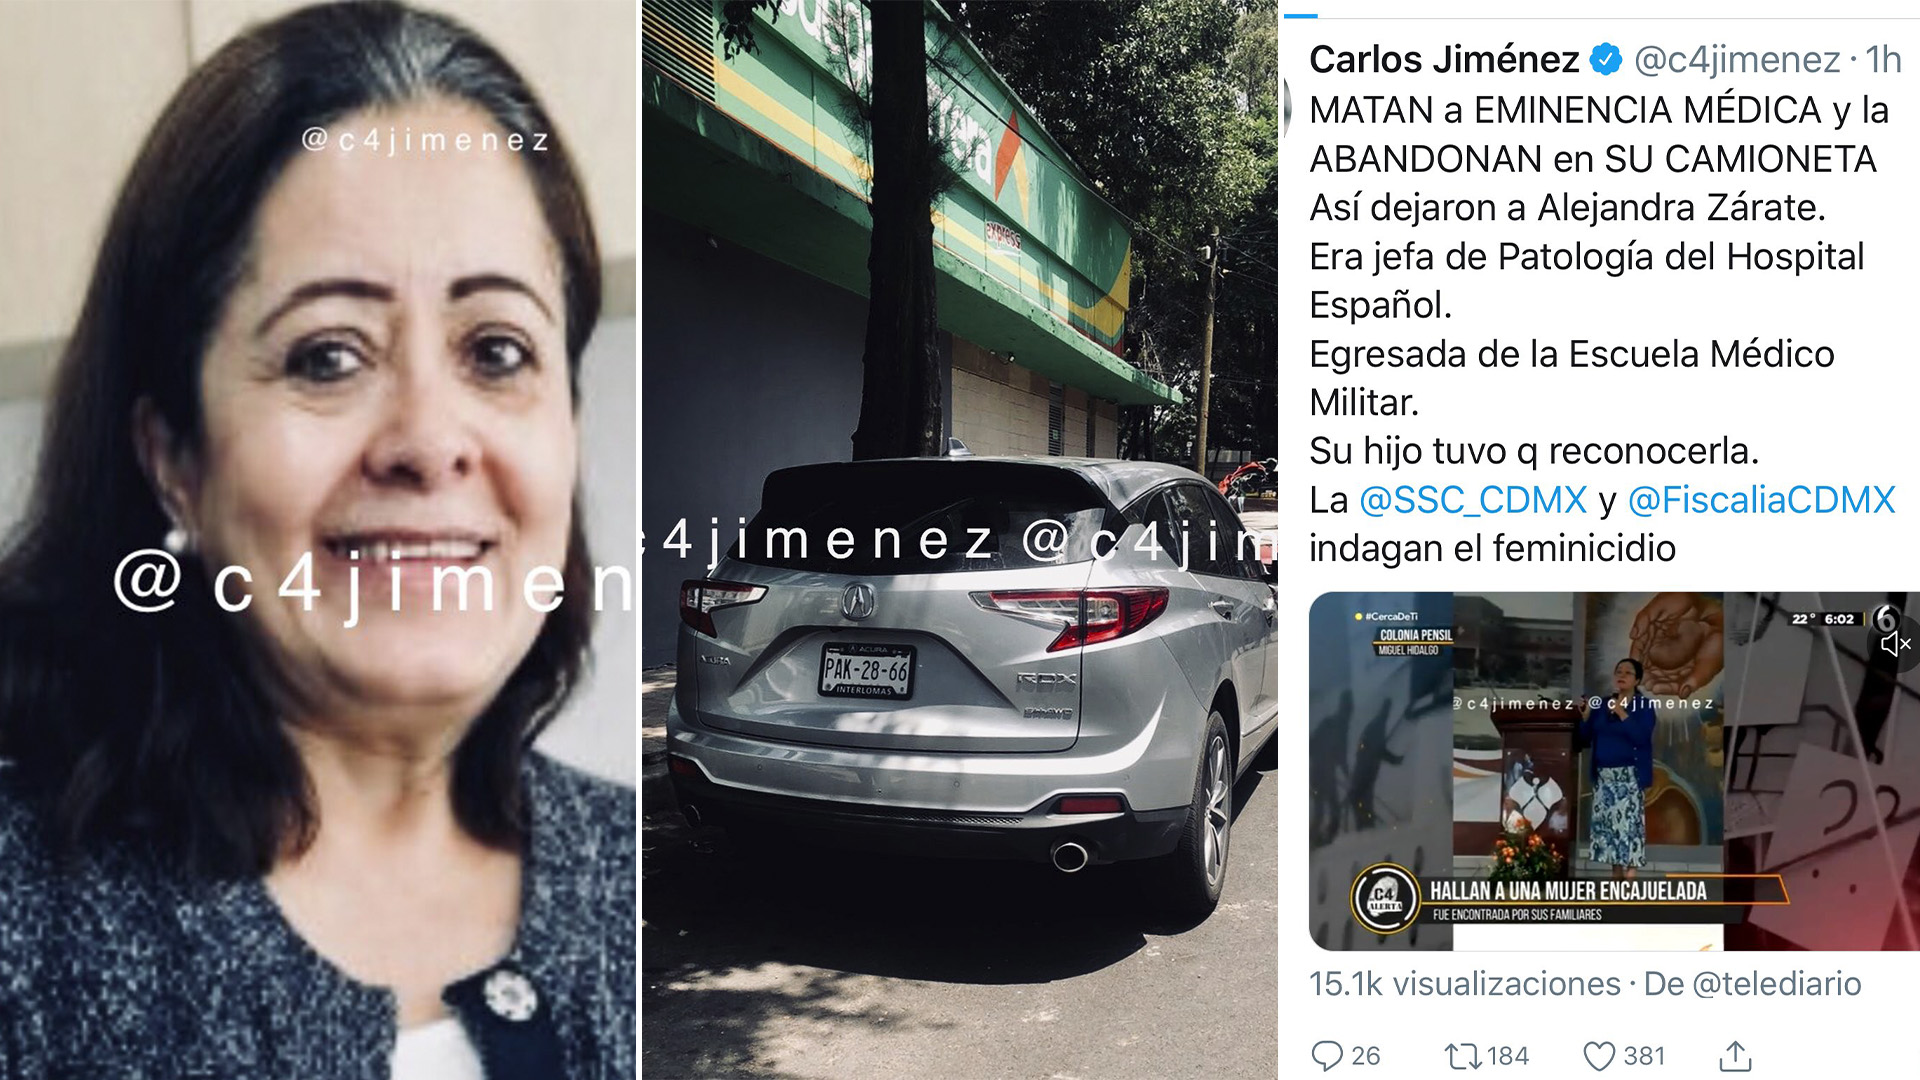 Alejandra Zárate was murdered in Miguel Hidalgo (Twitter: @c4jimenez)